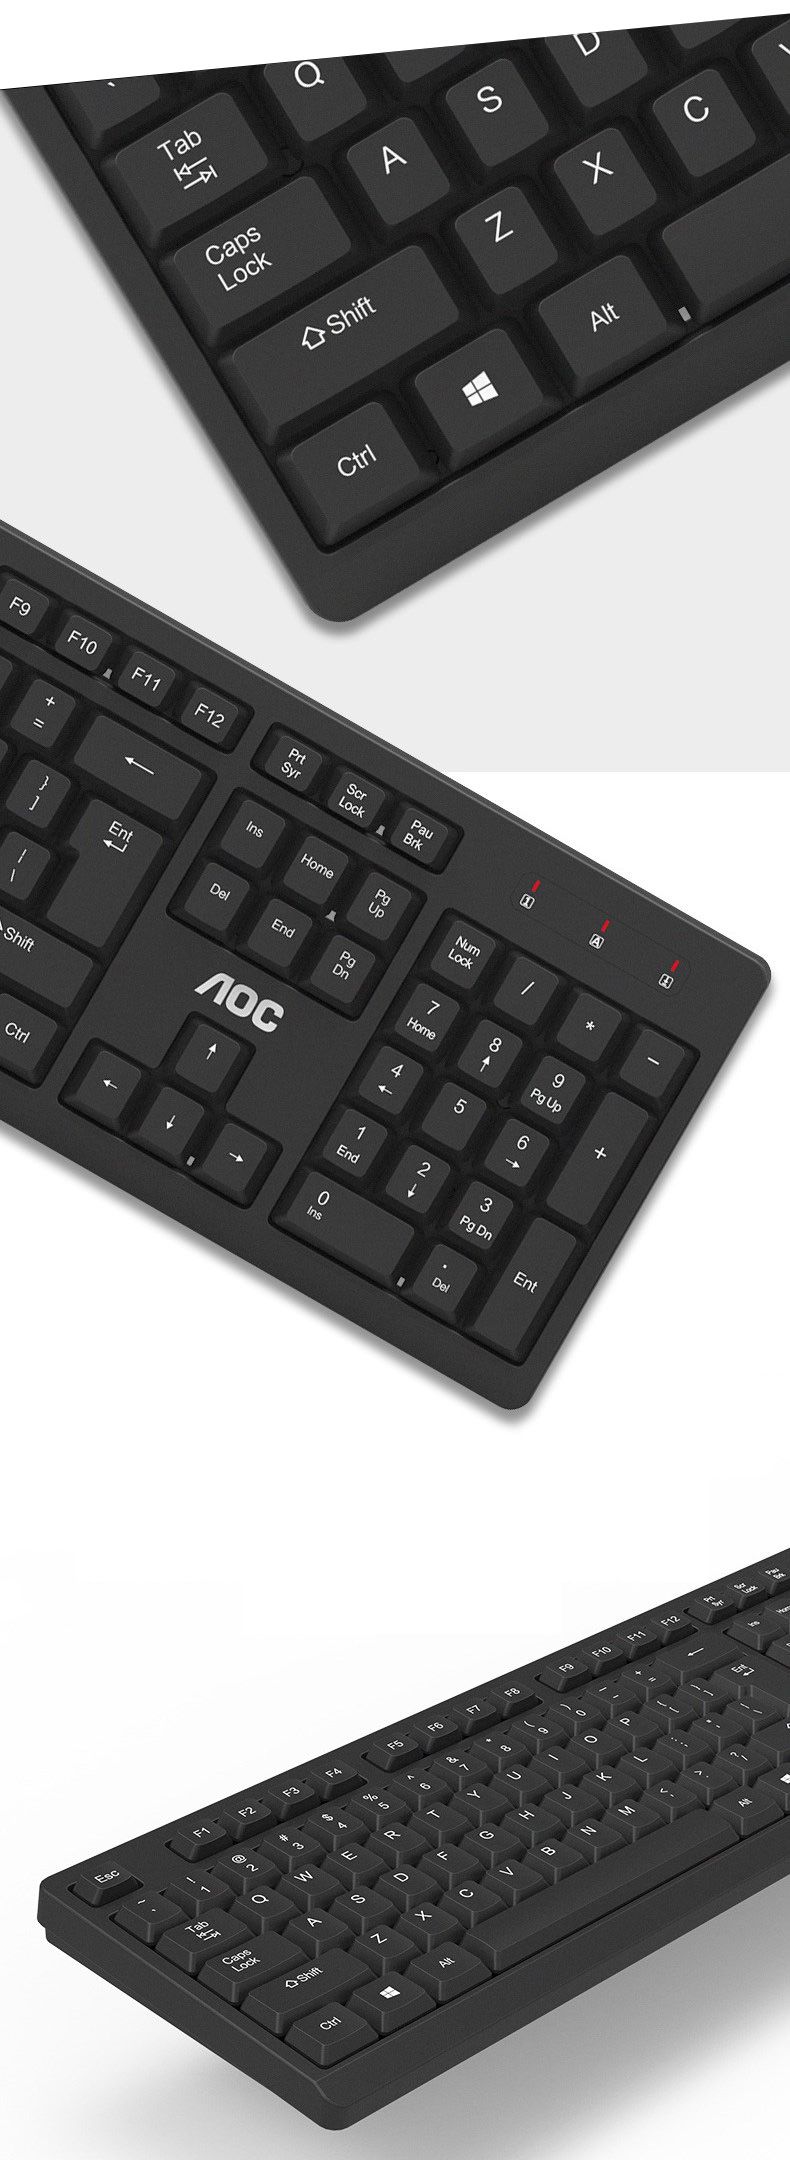 AOC-KM210-Wireless-Keyboard--Mouse-Set-104-keys-Waterproof-Keyboard-24-GHz-USB-Receiver-Mouse-for-Co-1620950